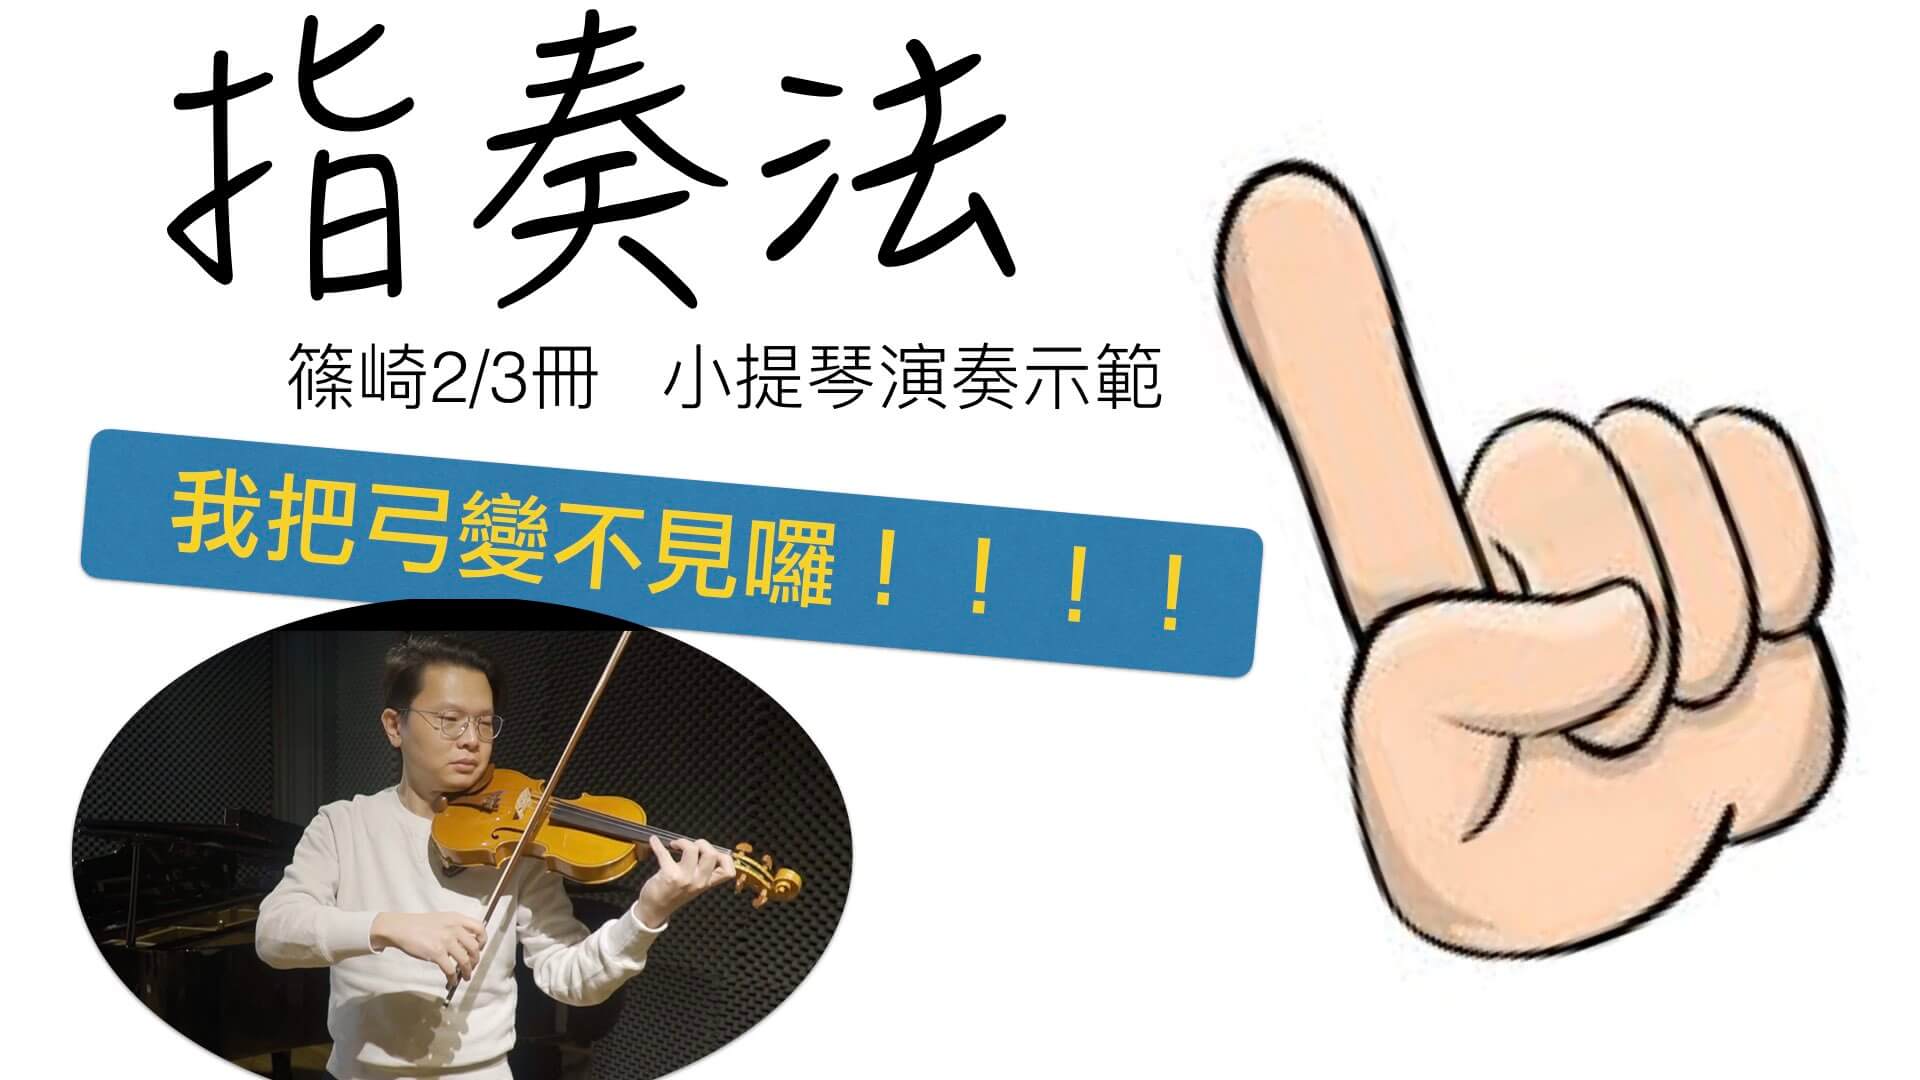 指奏法  撥弦練習 @
			
				張偉軒小提琴
			
		